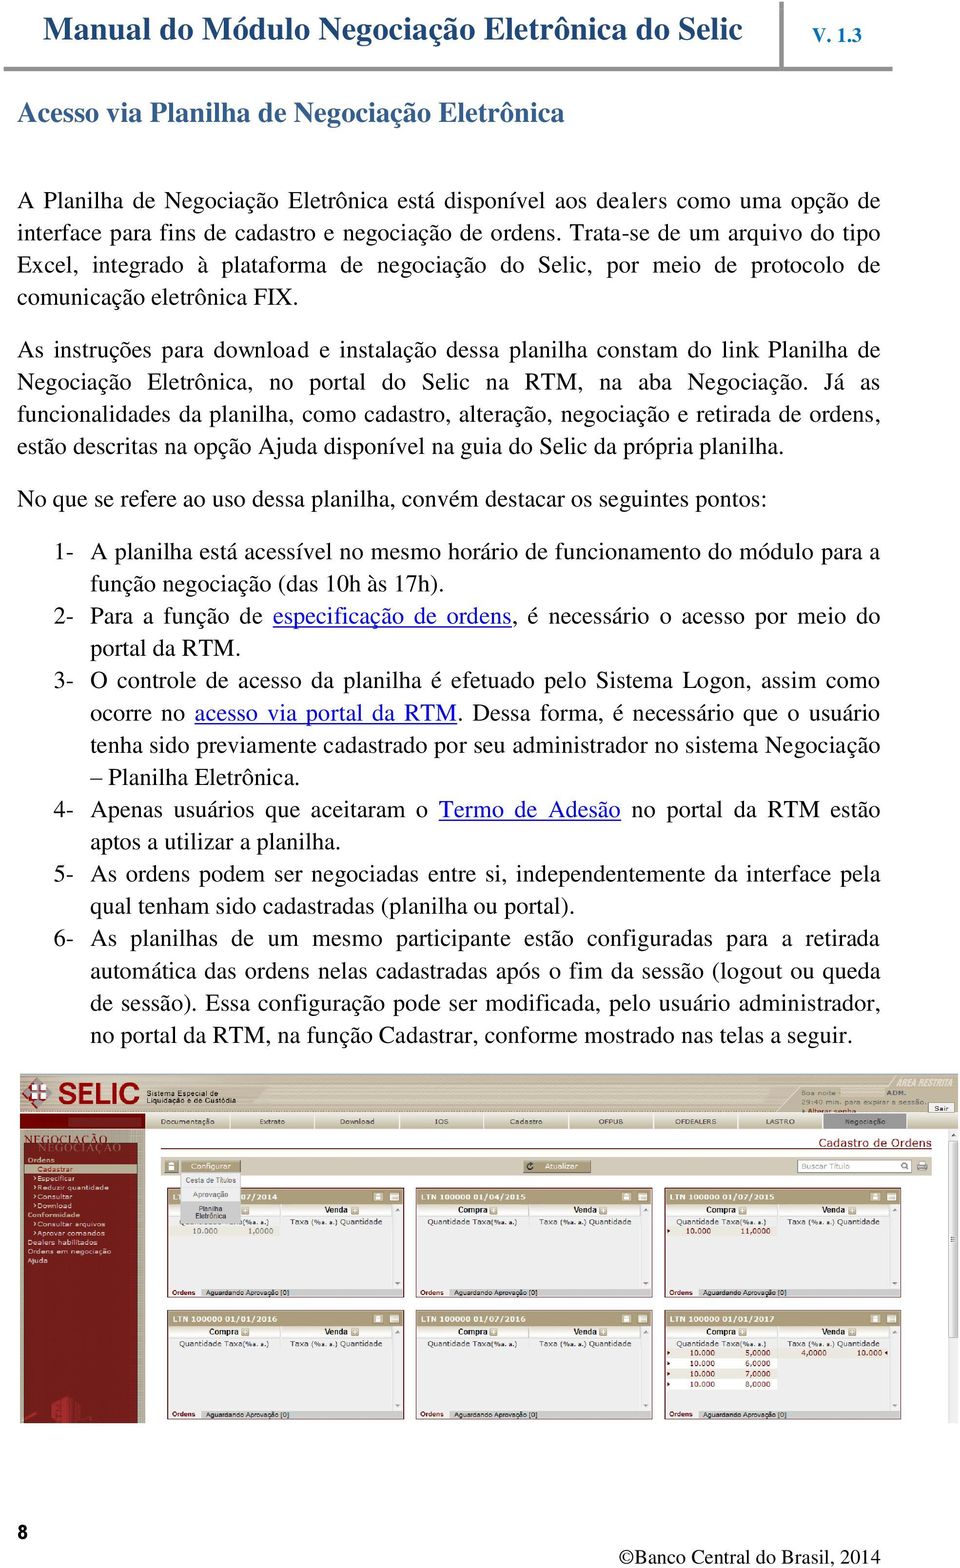 As instruções para download e instalação dessa planilha constam do link Planilha de Negociação Eletrônica, no portal do Selic na RTM, na aba Negociação.